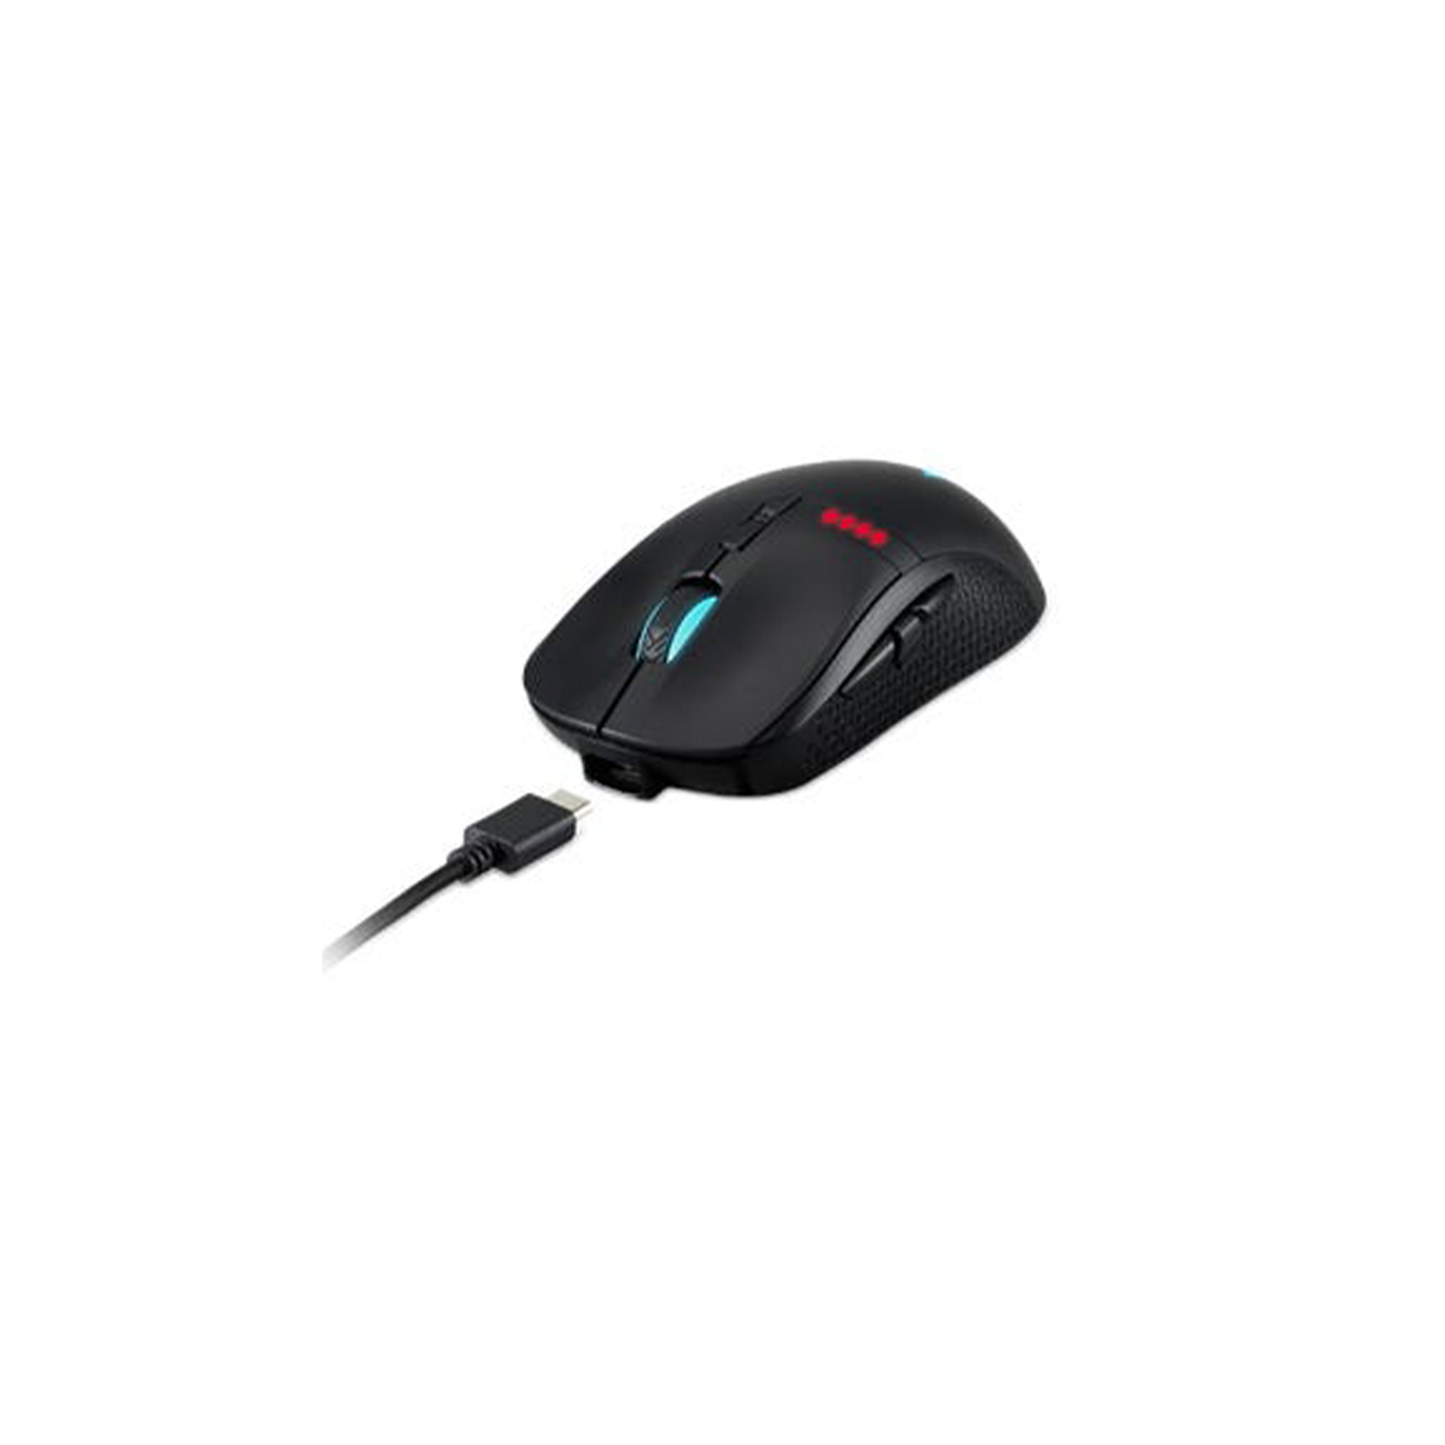 Predator Cestus 350 Gaming Mouse